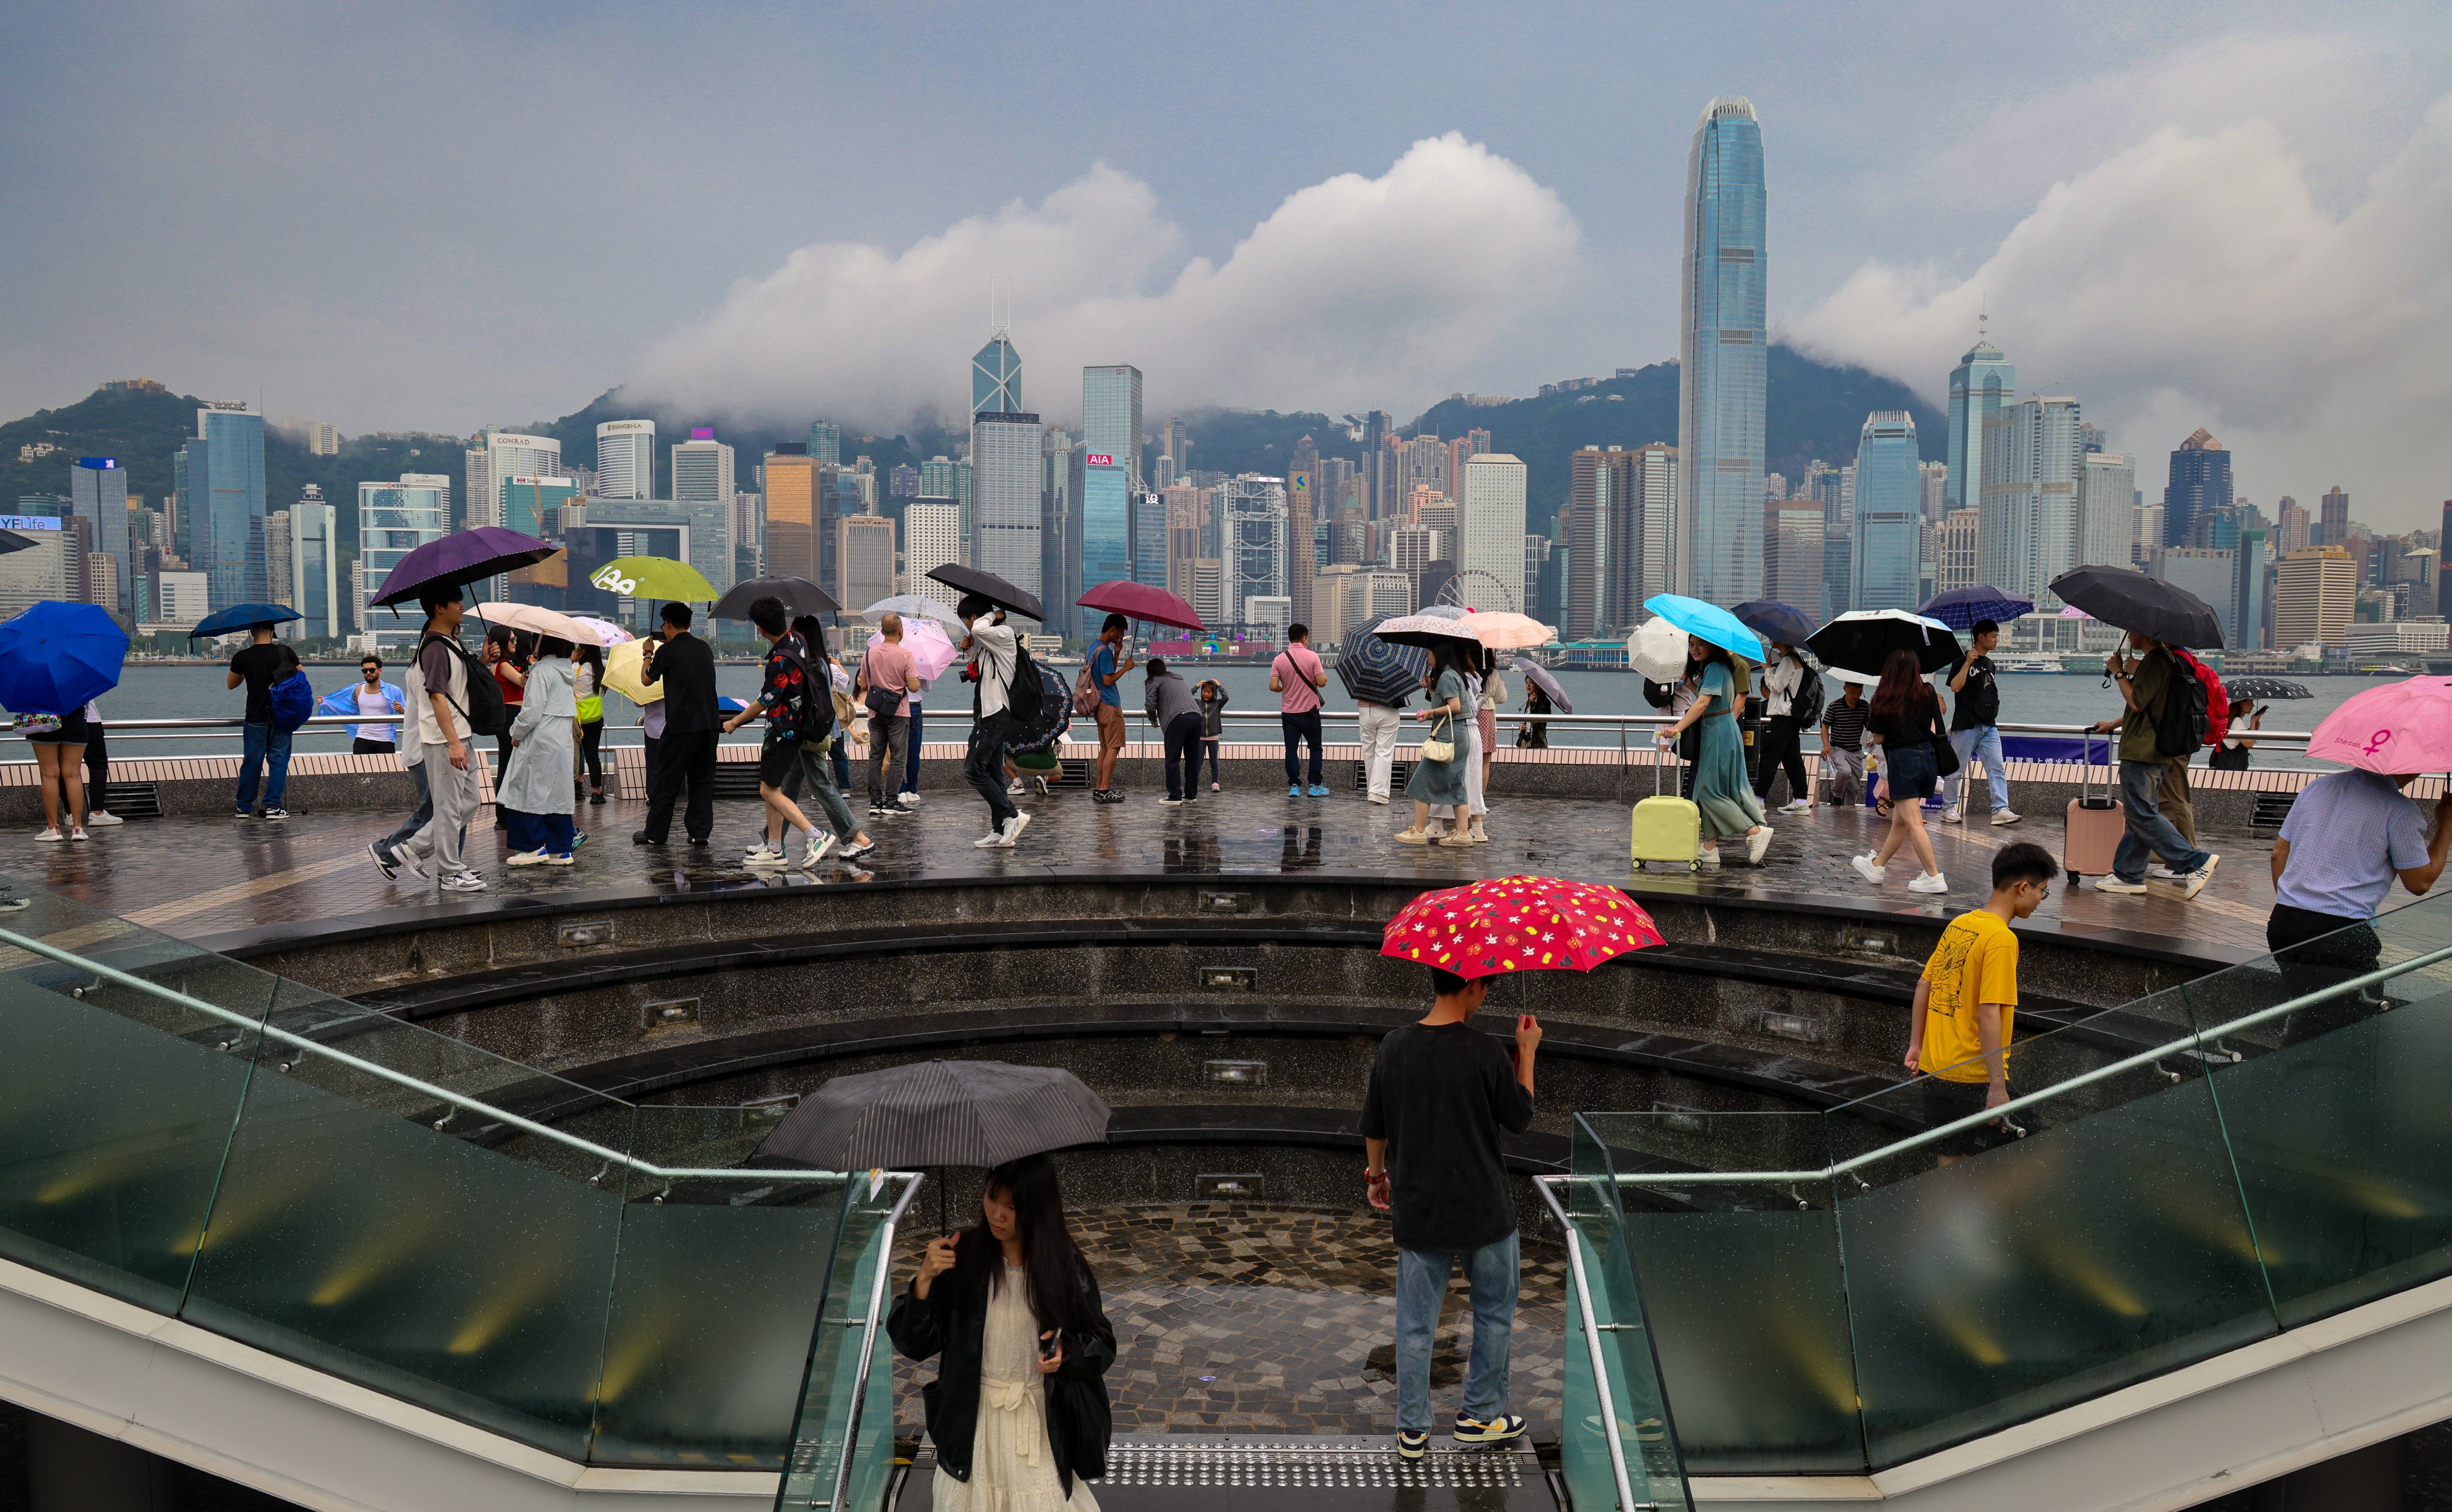 Tourists visit the Tsim Sha Tsui waterfront despite the weather. Photo: Jelly Tse